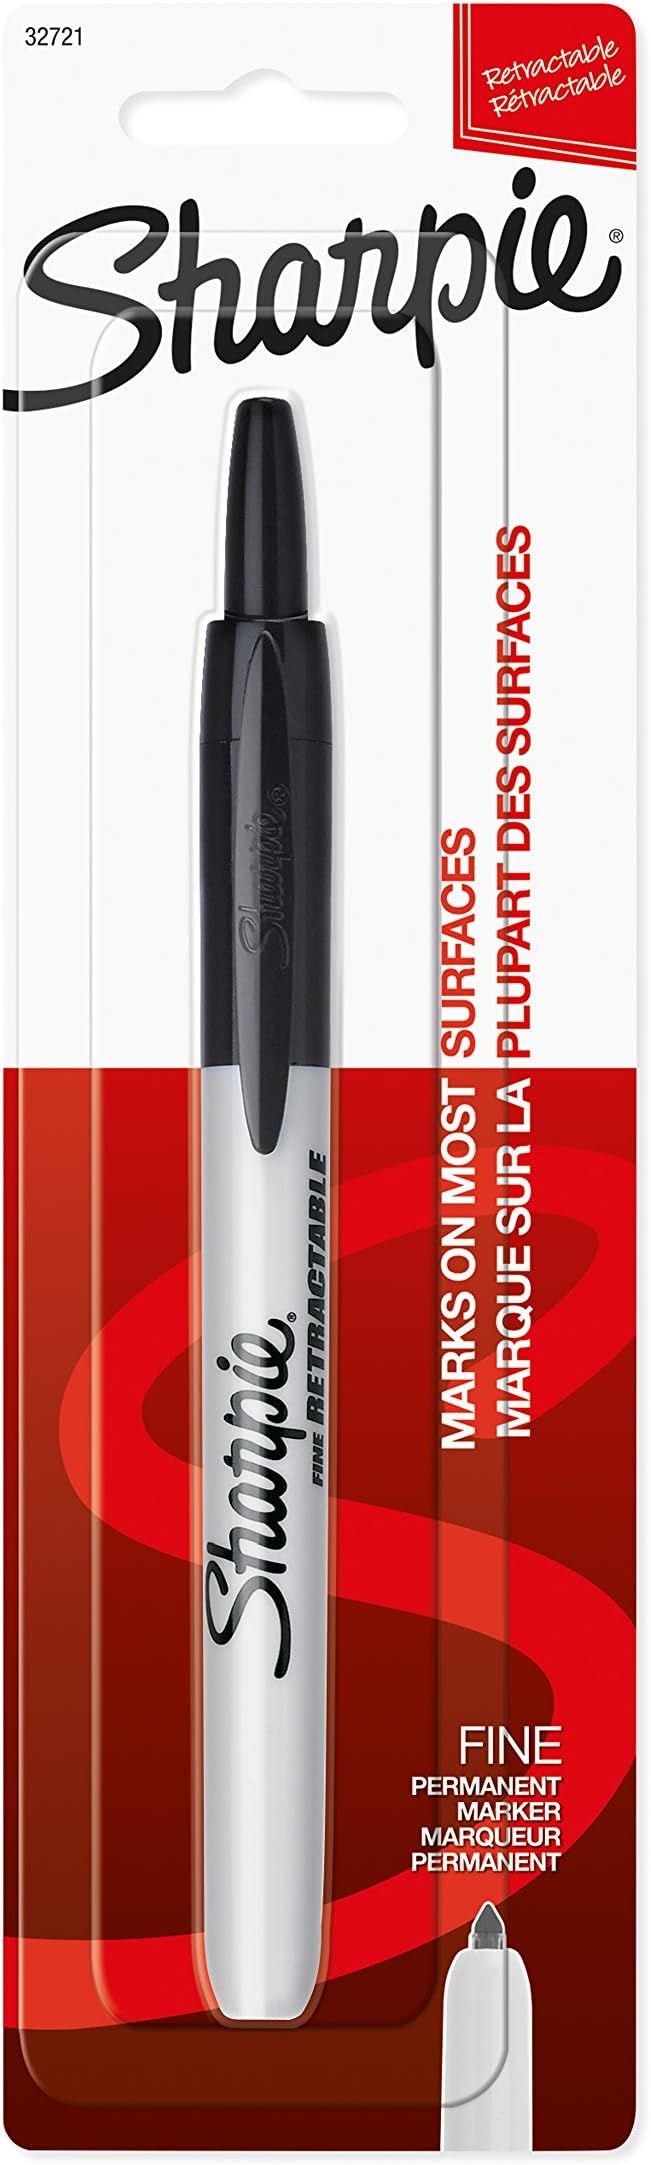 SHARPIE Retractable Permanent Marker, Fine Point, Black, 1 Count | Amazon (US)